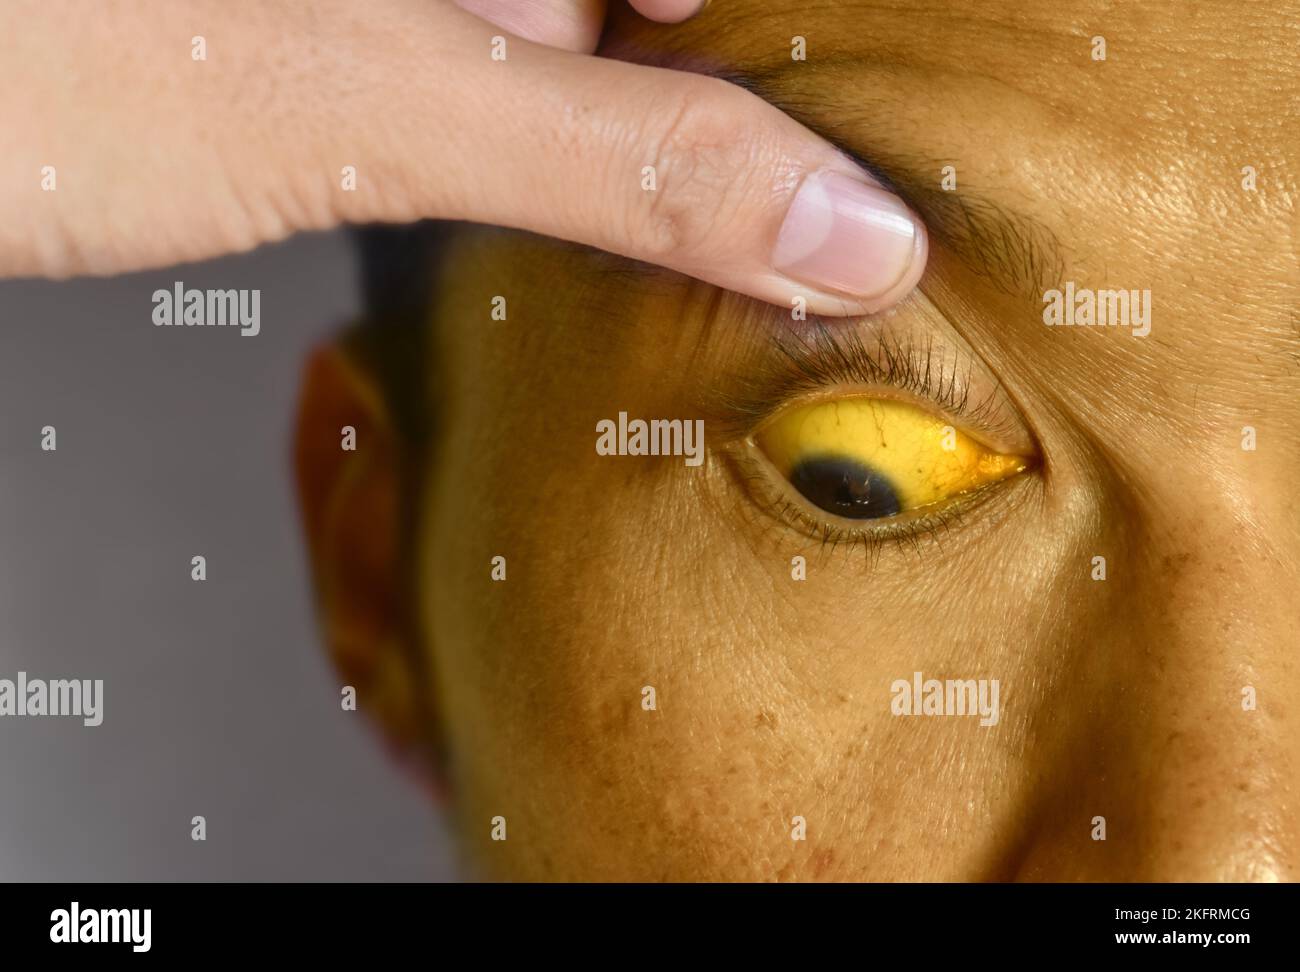 Tiefer Gelbsucht bei einem asiatischen männlichen Patienten. Gelbliche Verfärbung von Haut und Sklera. Hyperbilirubinämie. Akute Hepatitis. Stockfoto